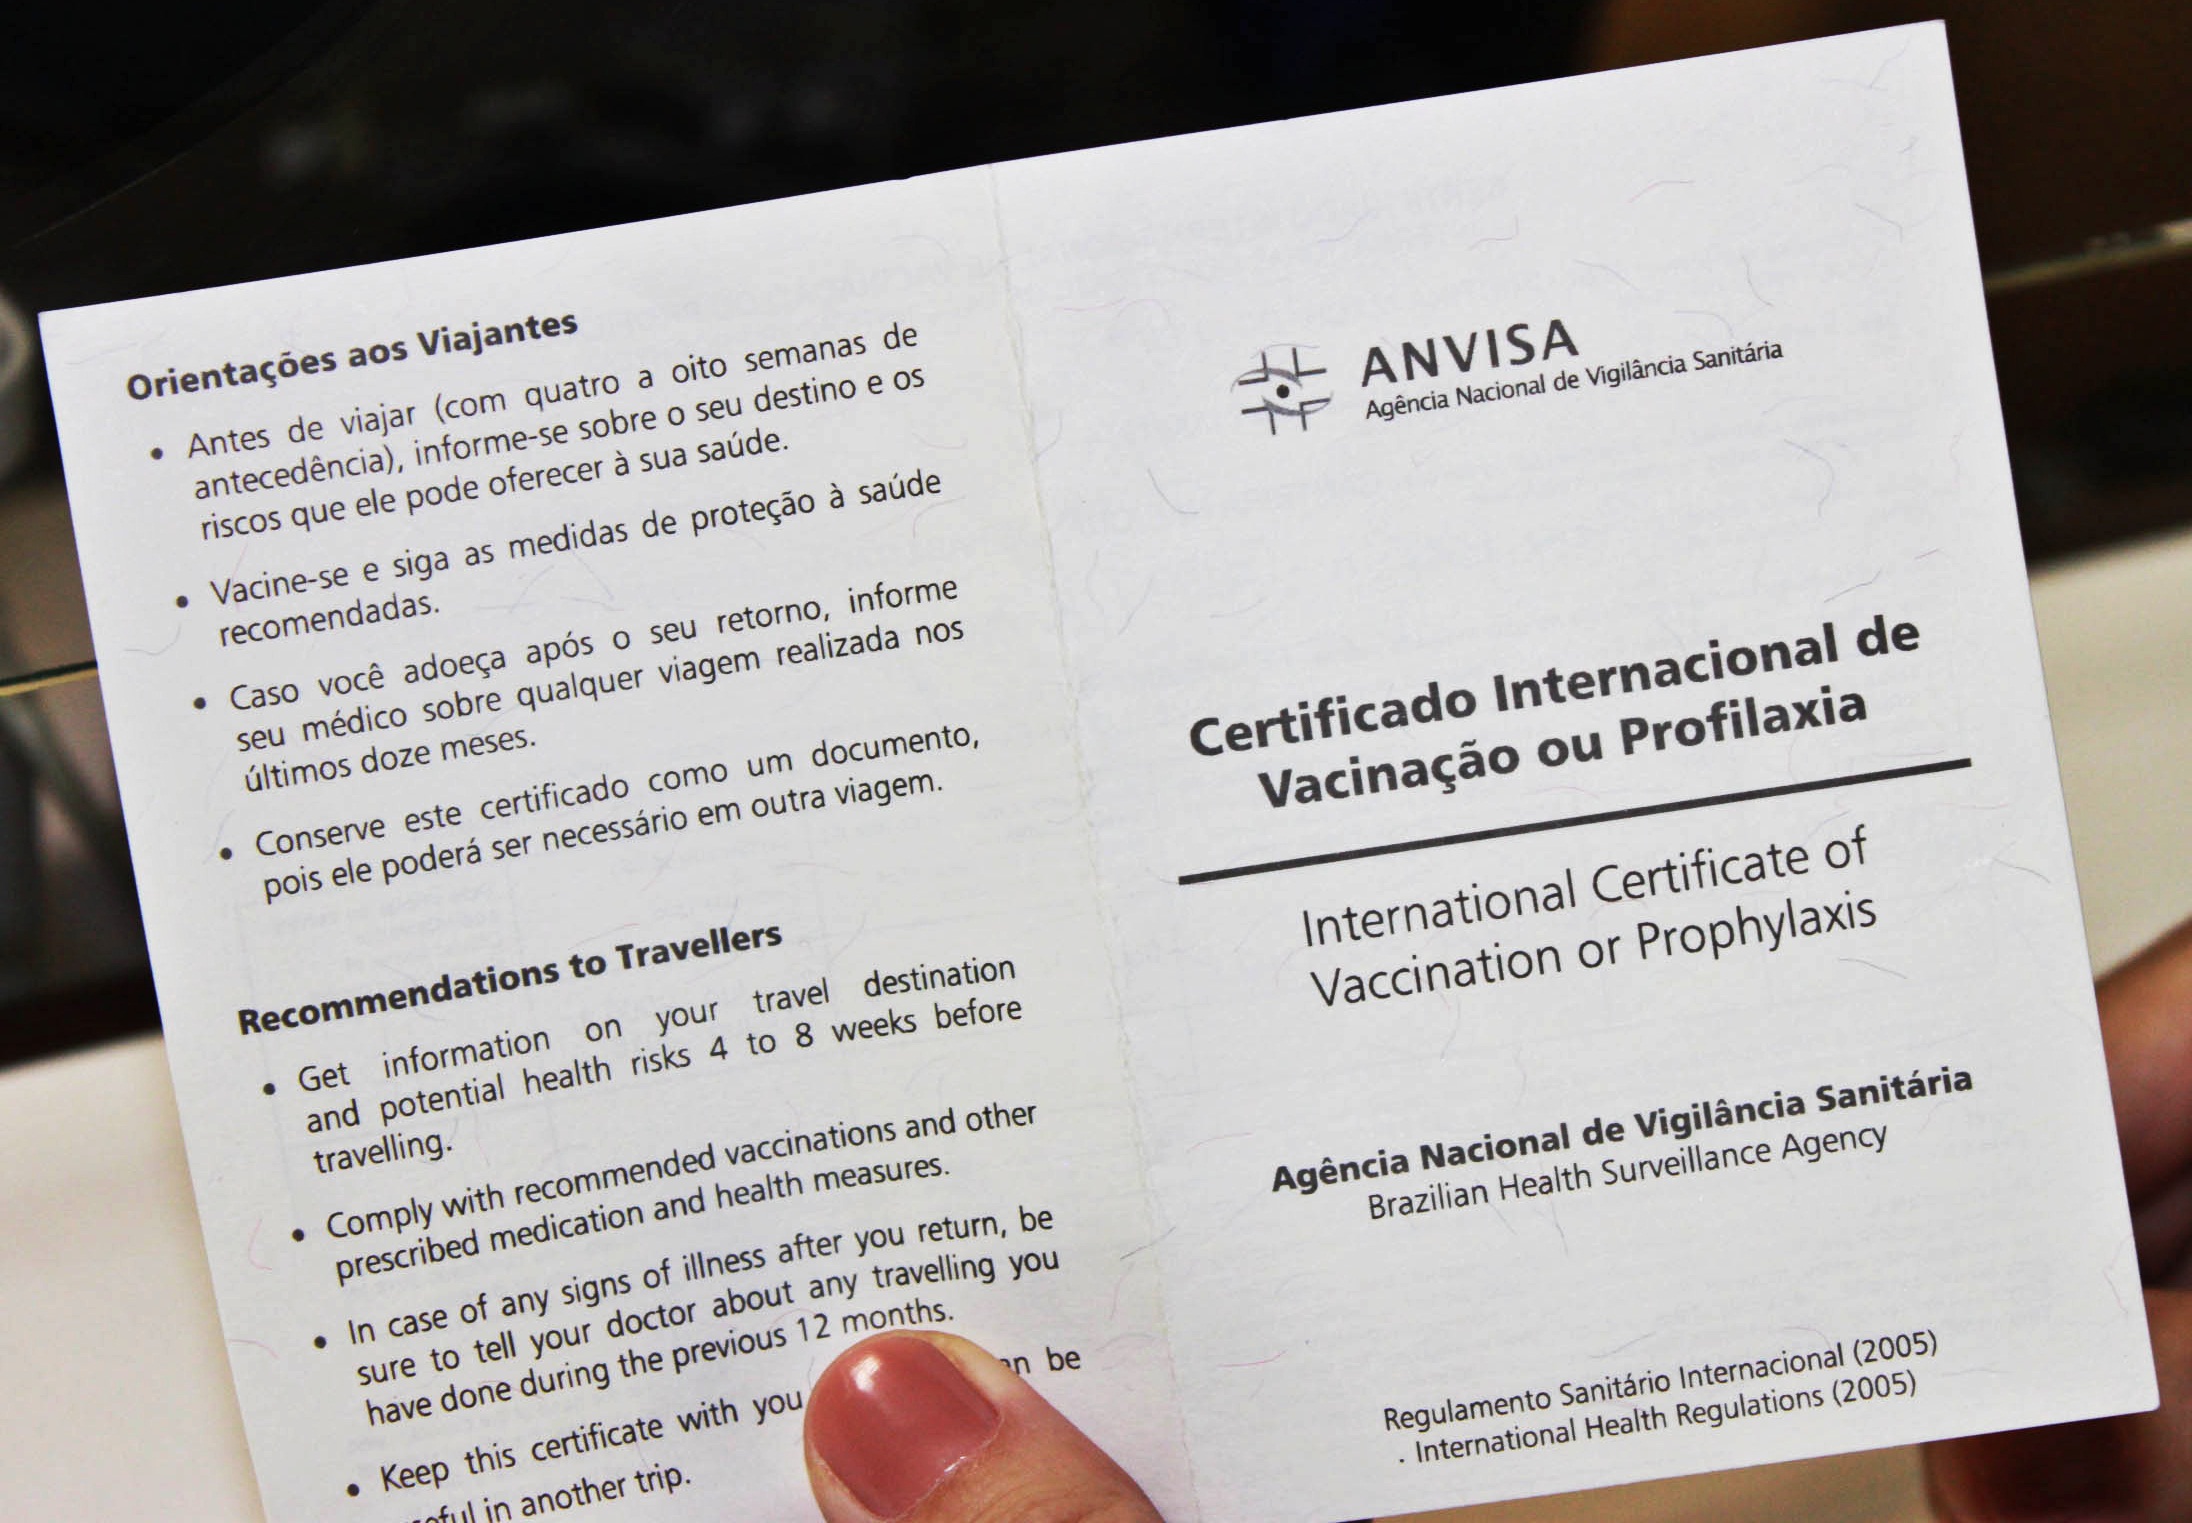 certificado-internacional-de-vacinacao-e-profilaxia-civp